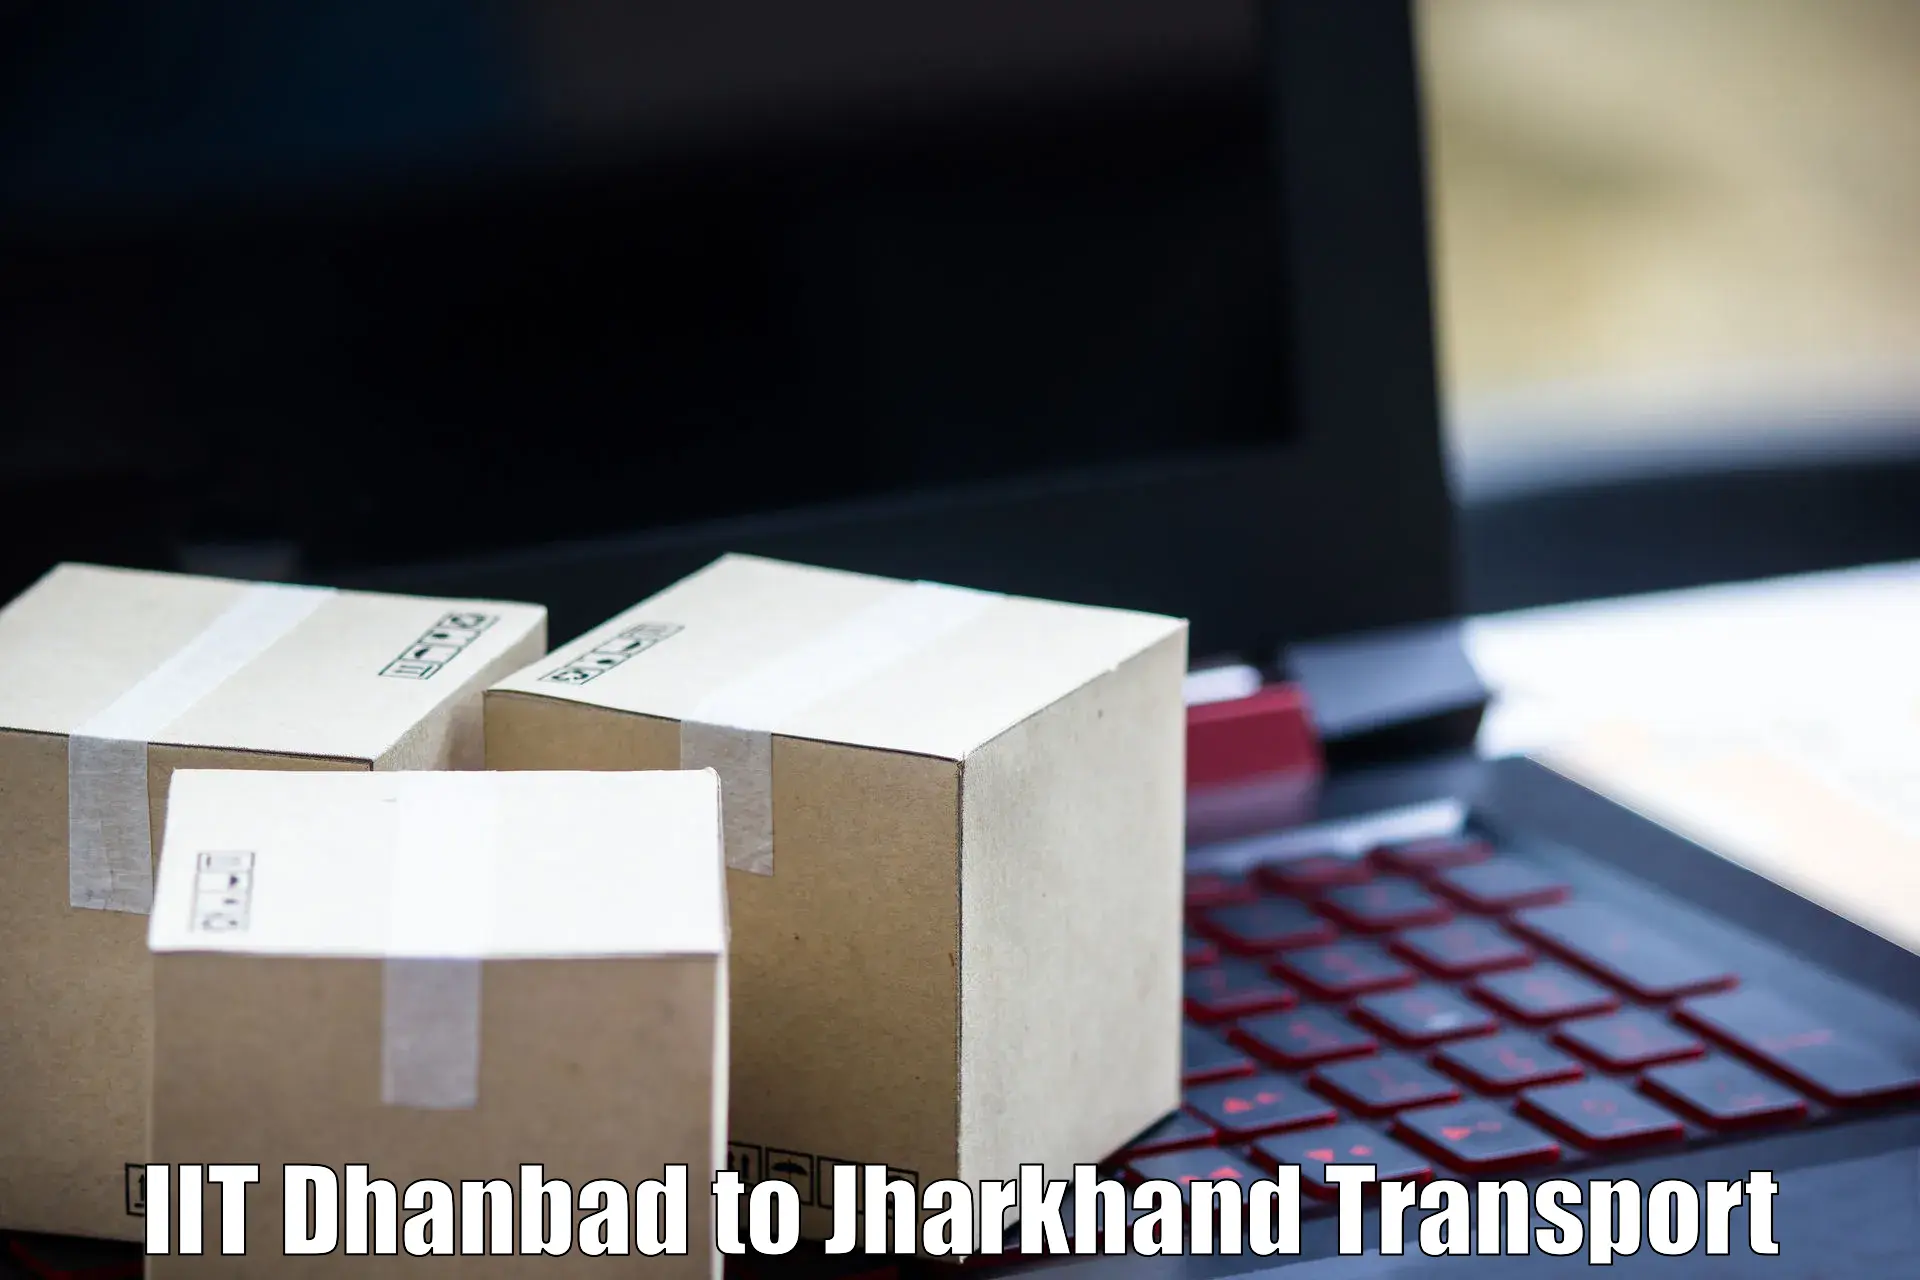 Pick up transport service IIT Dhanbad to Bokaro